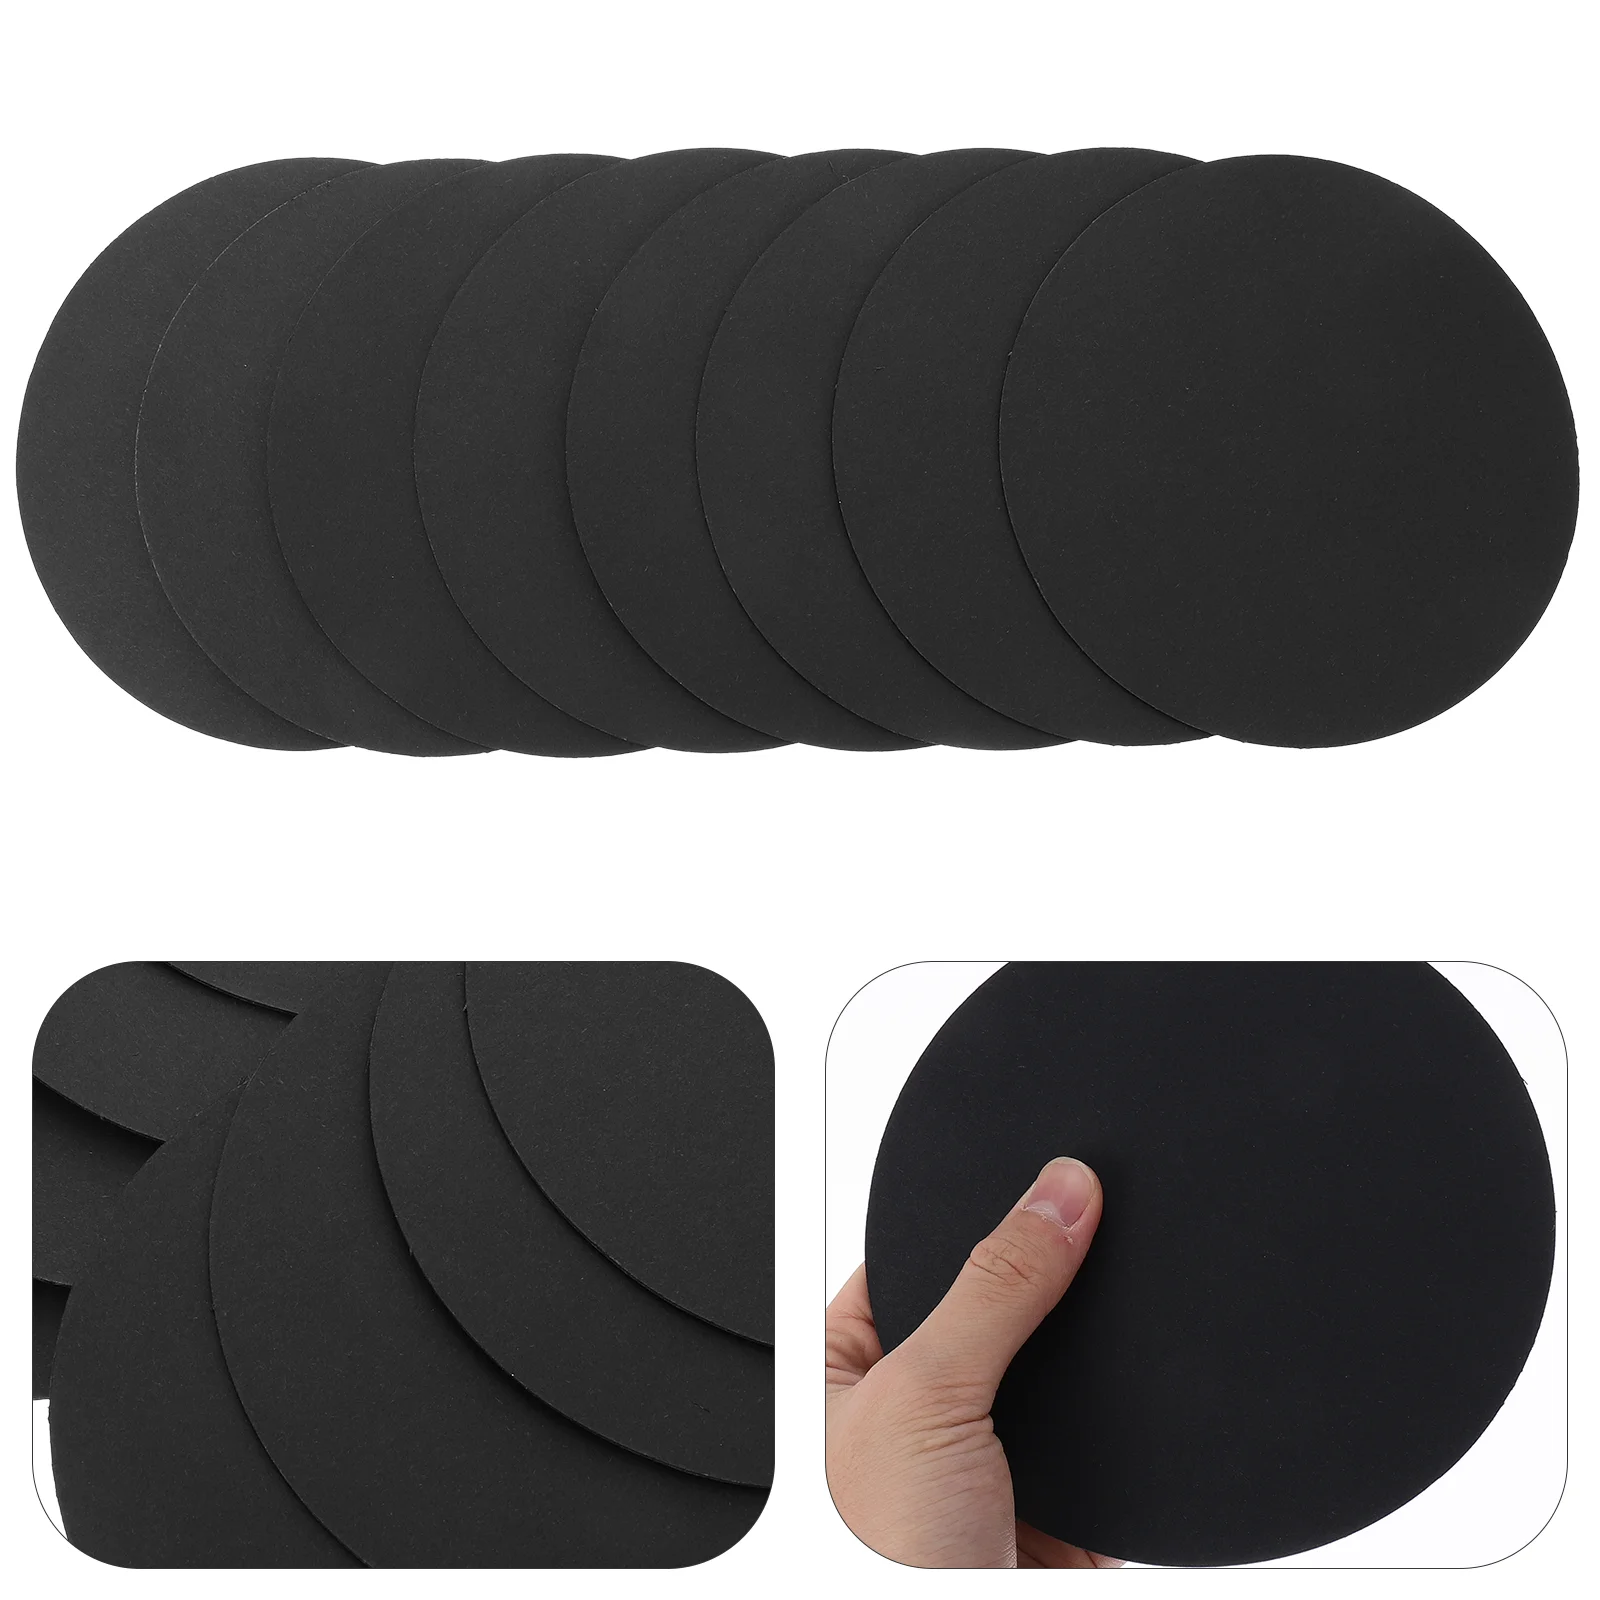 

8 Pcs Kits Game House Mandala Drawing Board Painting Paperboard Panels Polka Dots Black Cardboard